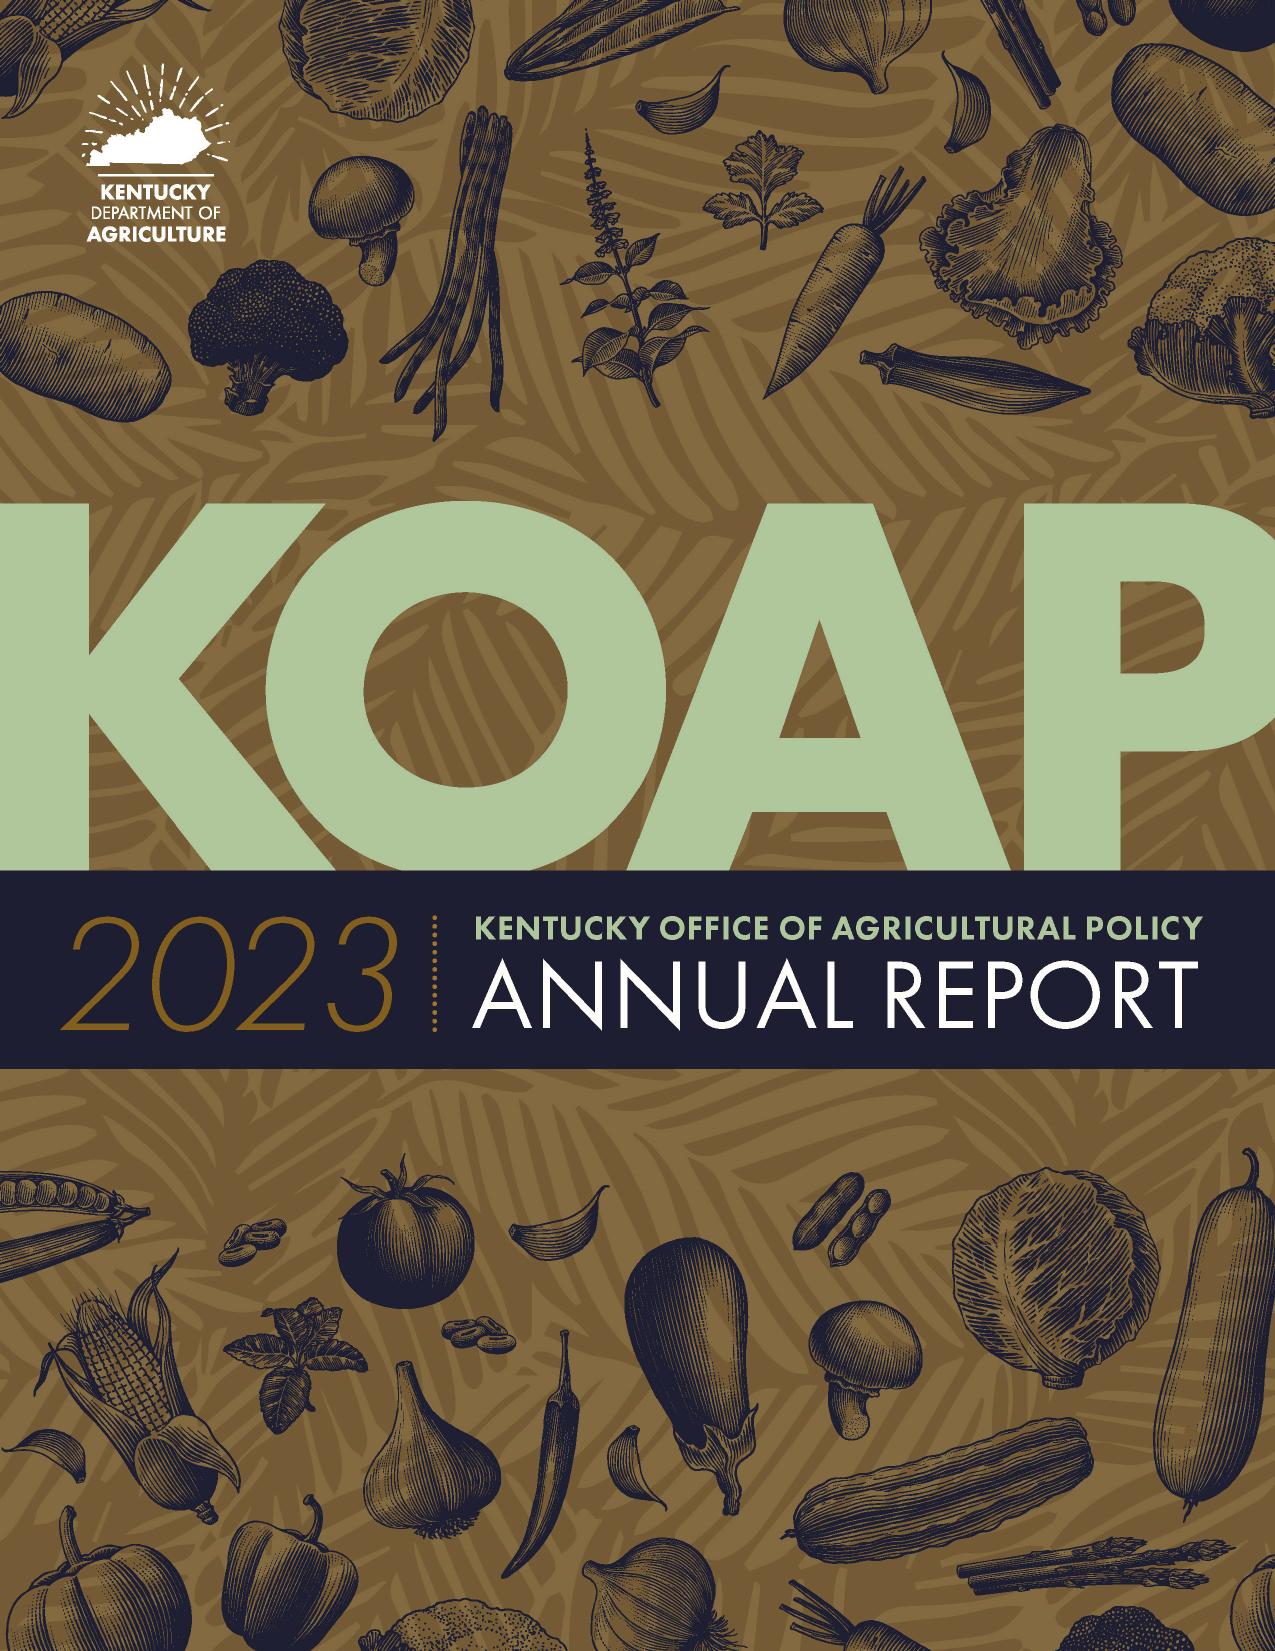 KYAGR 2023 Annual Report